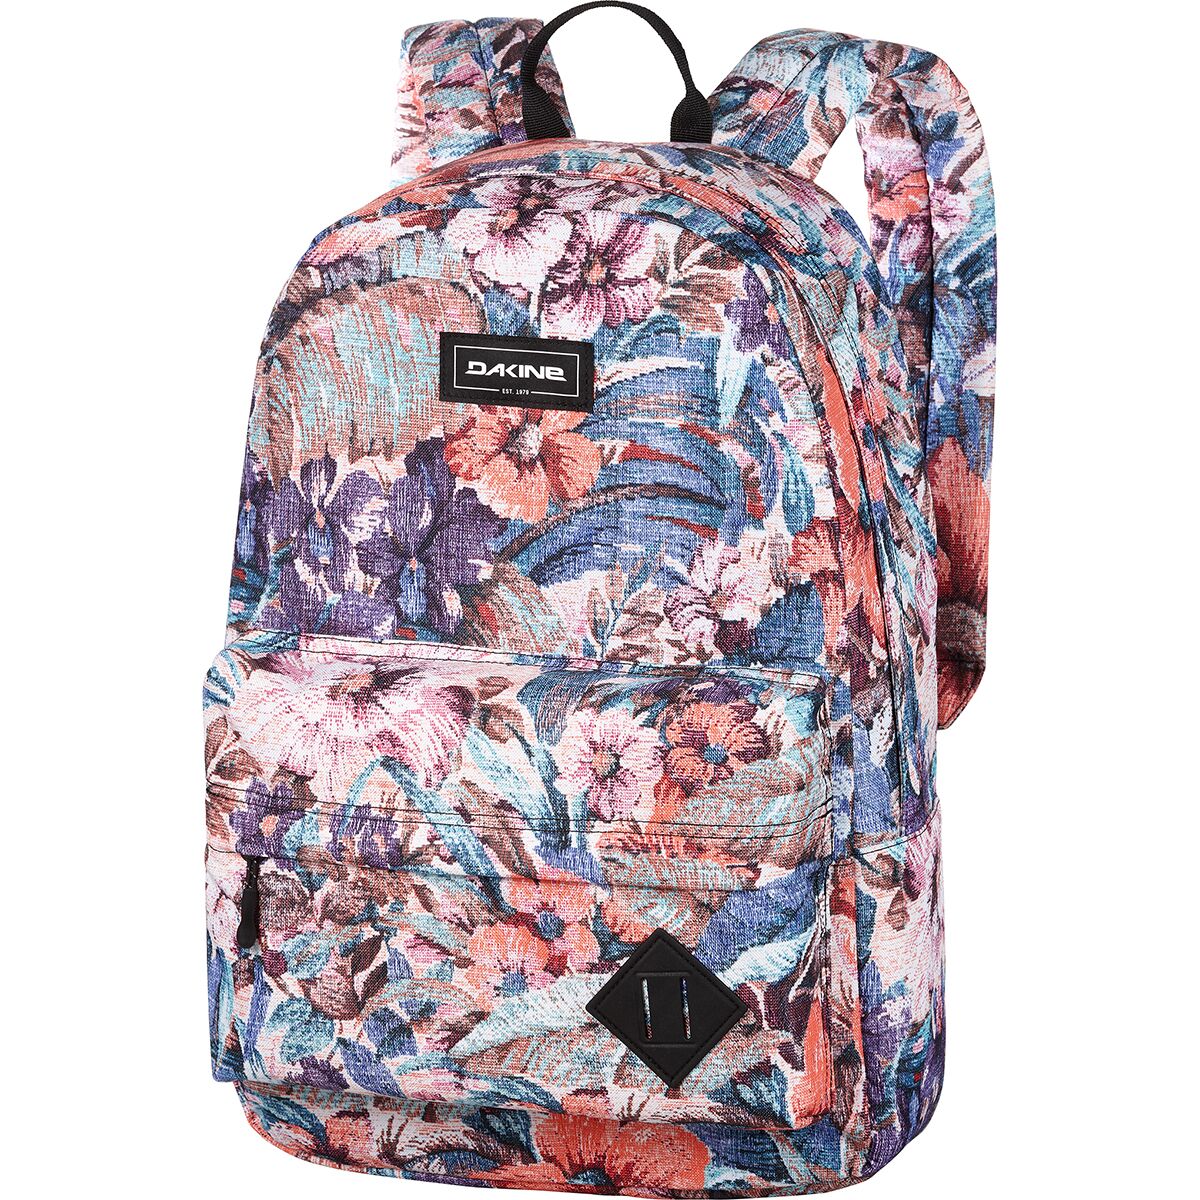 DAKINE 365 21L Backpack 8 Bit Floral, One Size